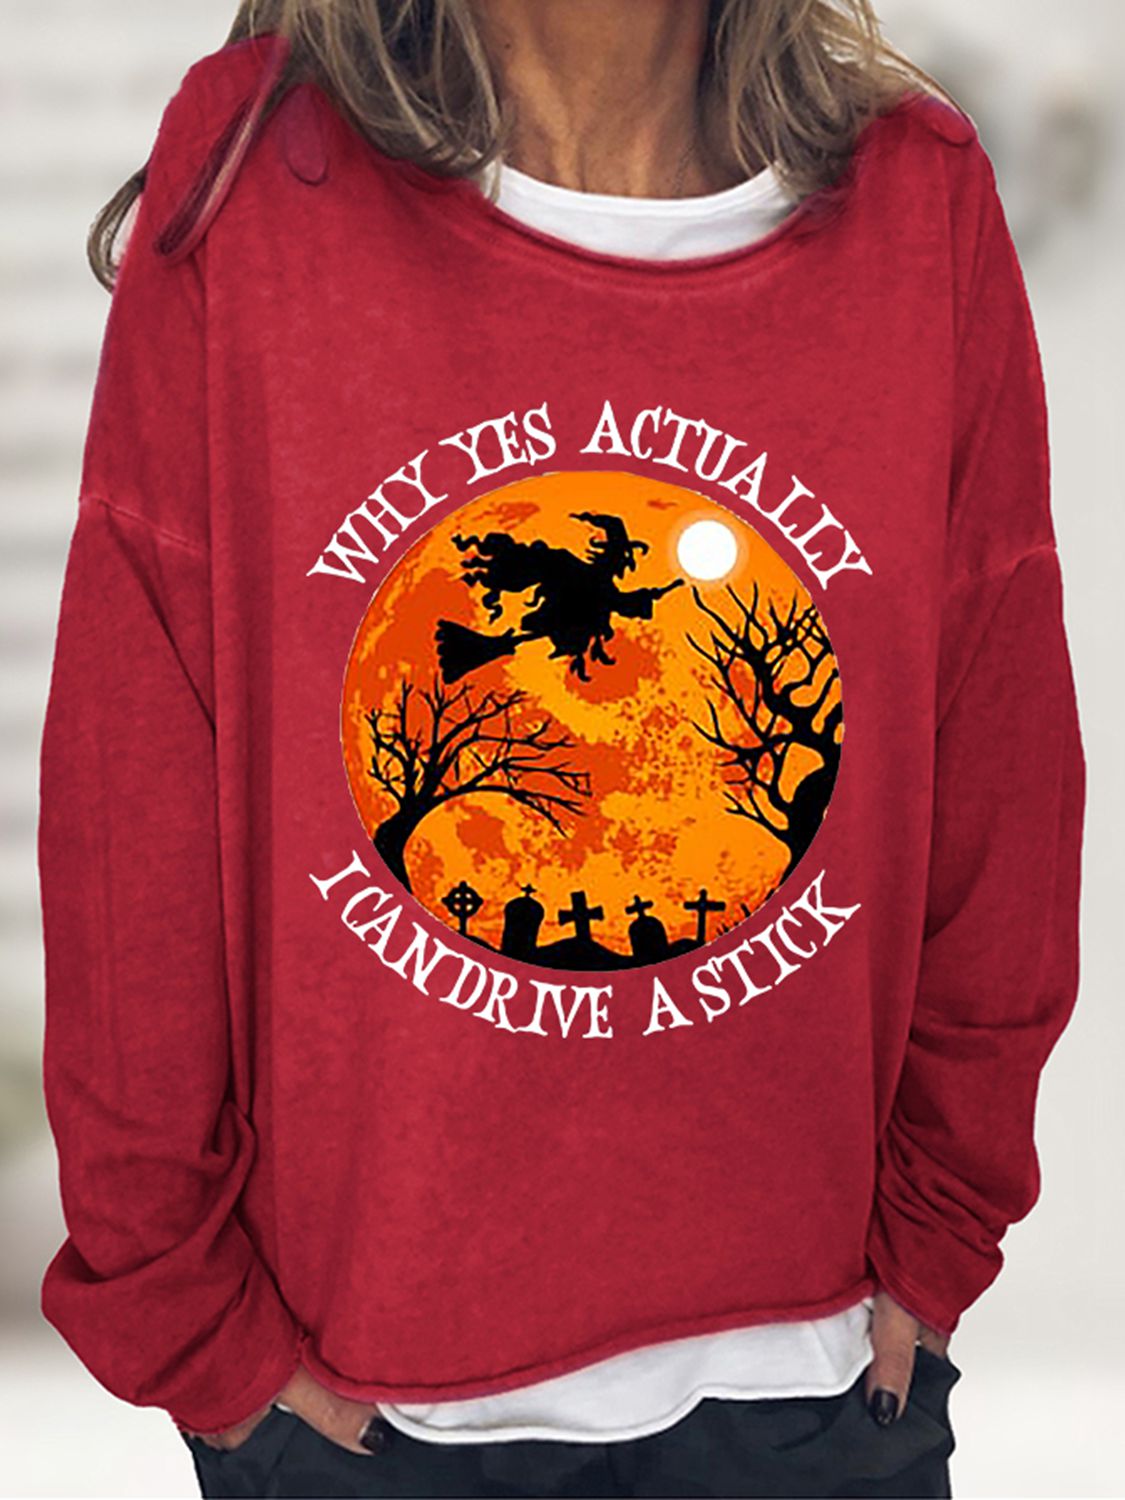 Witchy Graphic Round Neck Sweatshirt